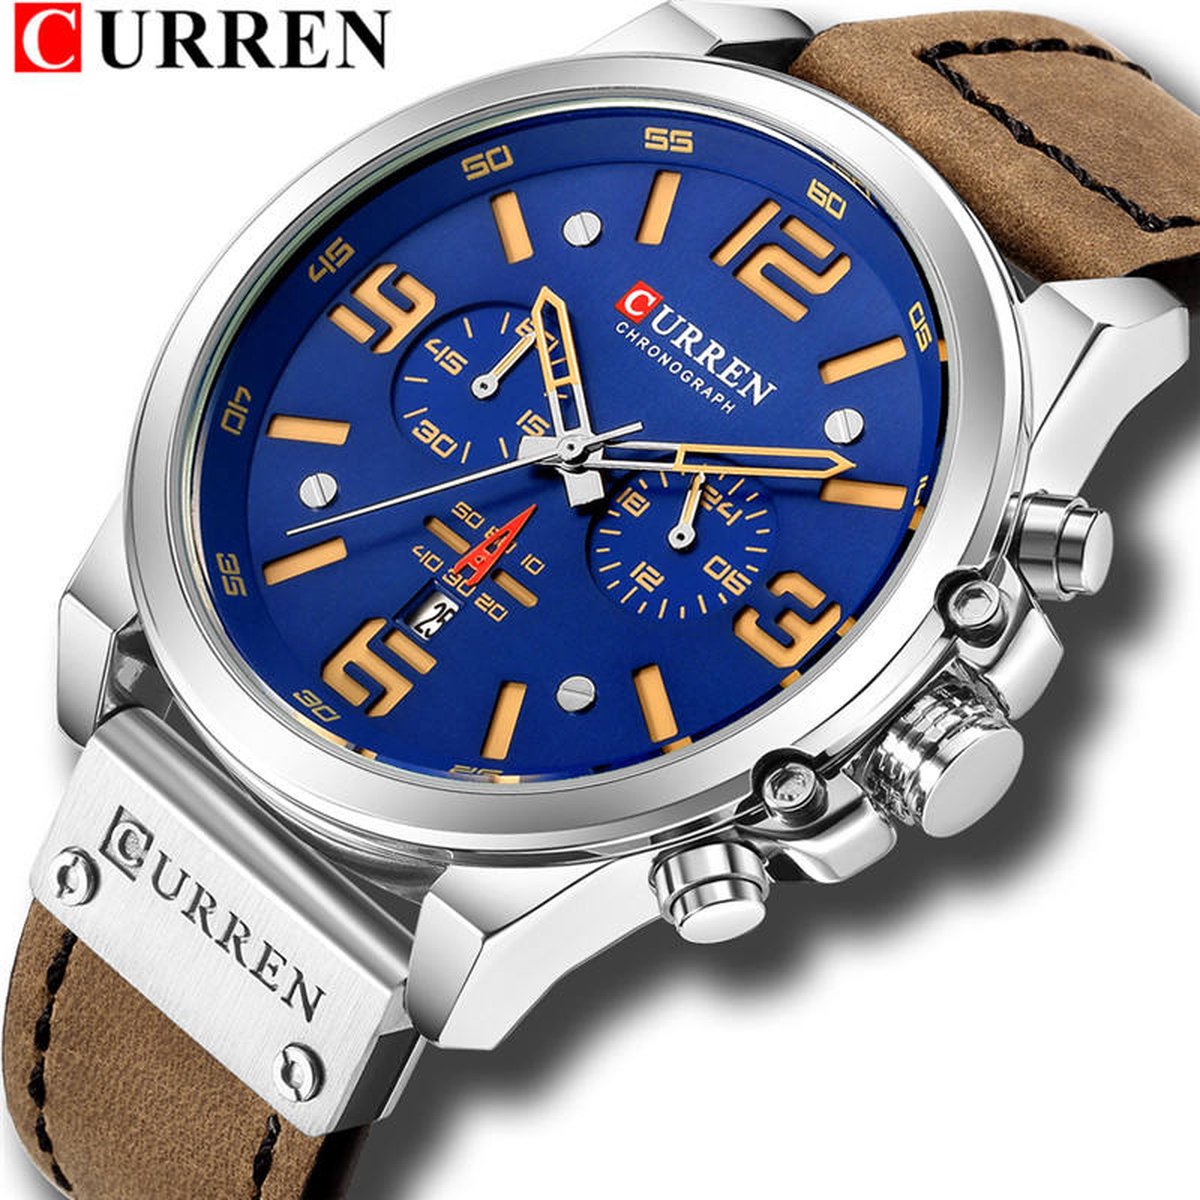 CURREN Horloge voor Mannen/Heren - Lederen Band - Jongens Horloges - Goud/Blauw - Ø 47 mm